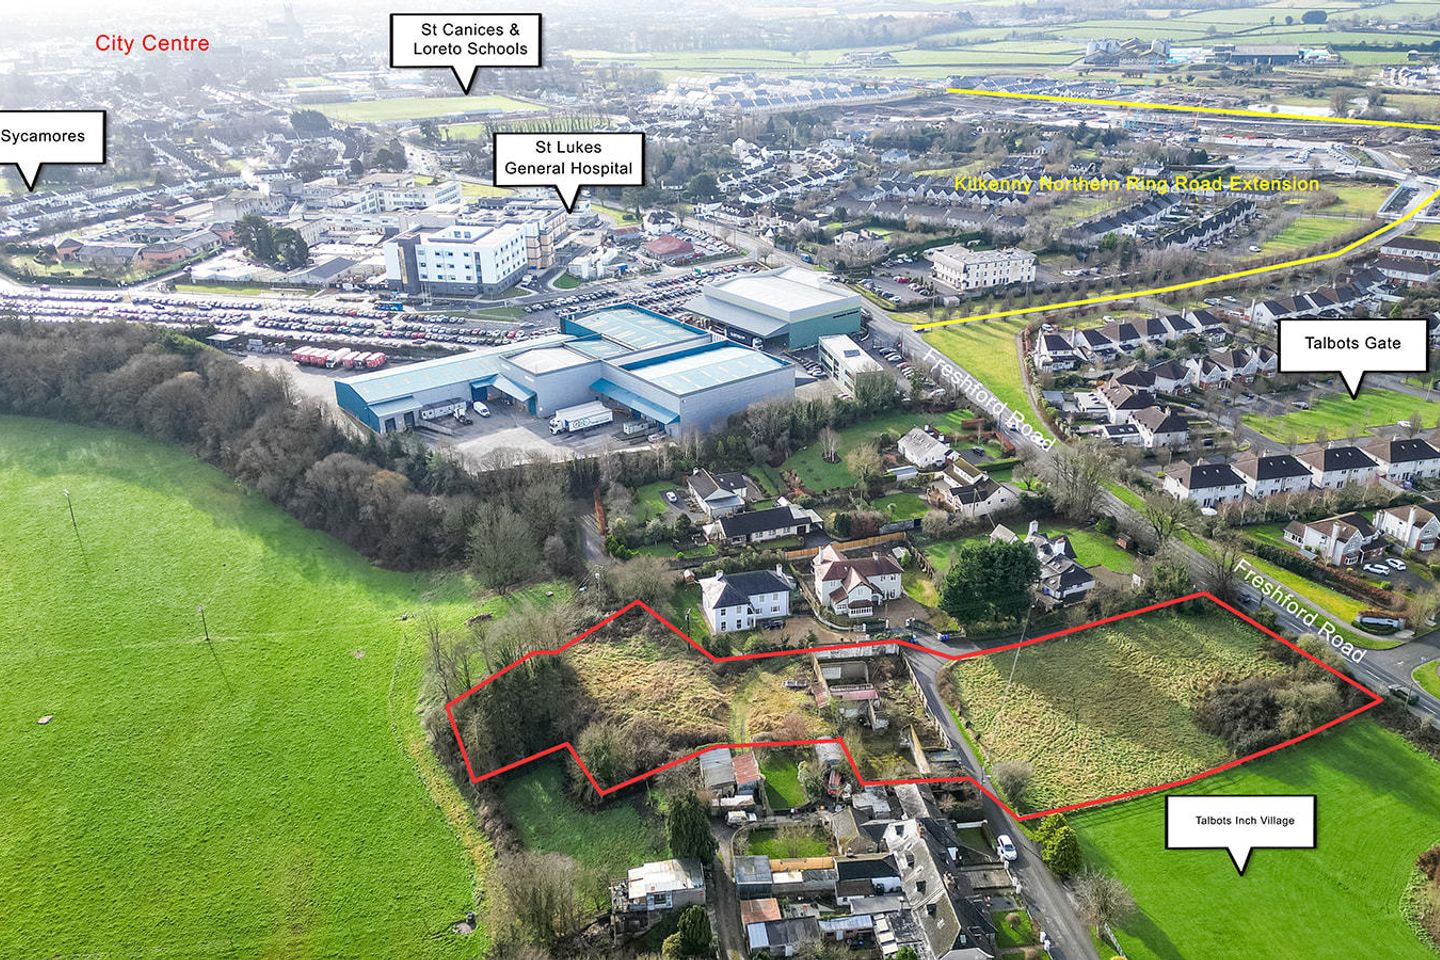 Talbotsinch Village - Development Site, Kilkenny, Co. Kilkenny